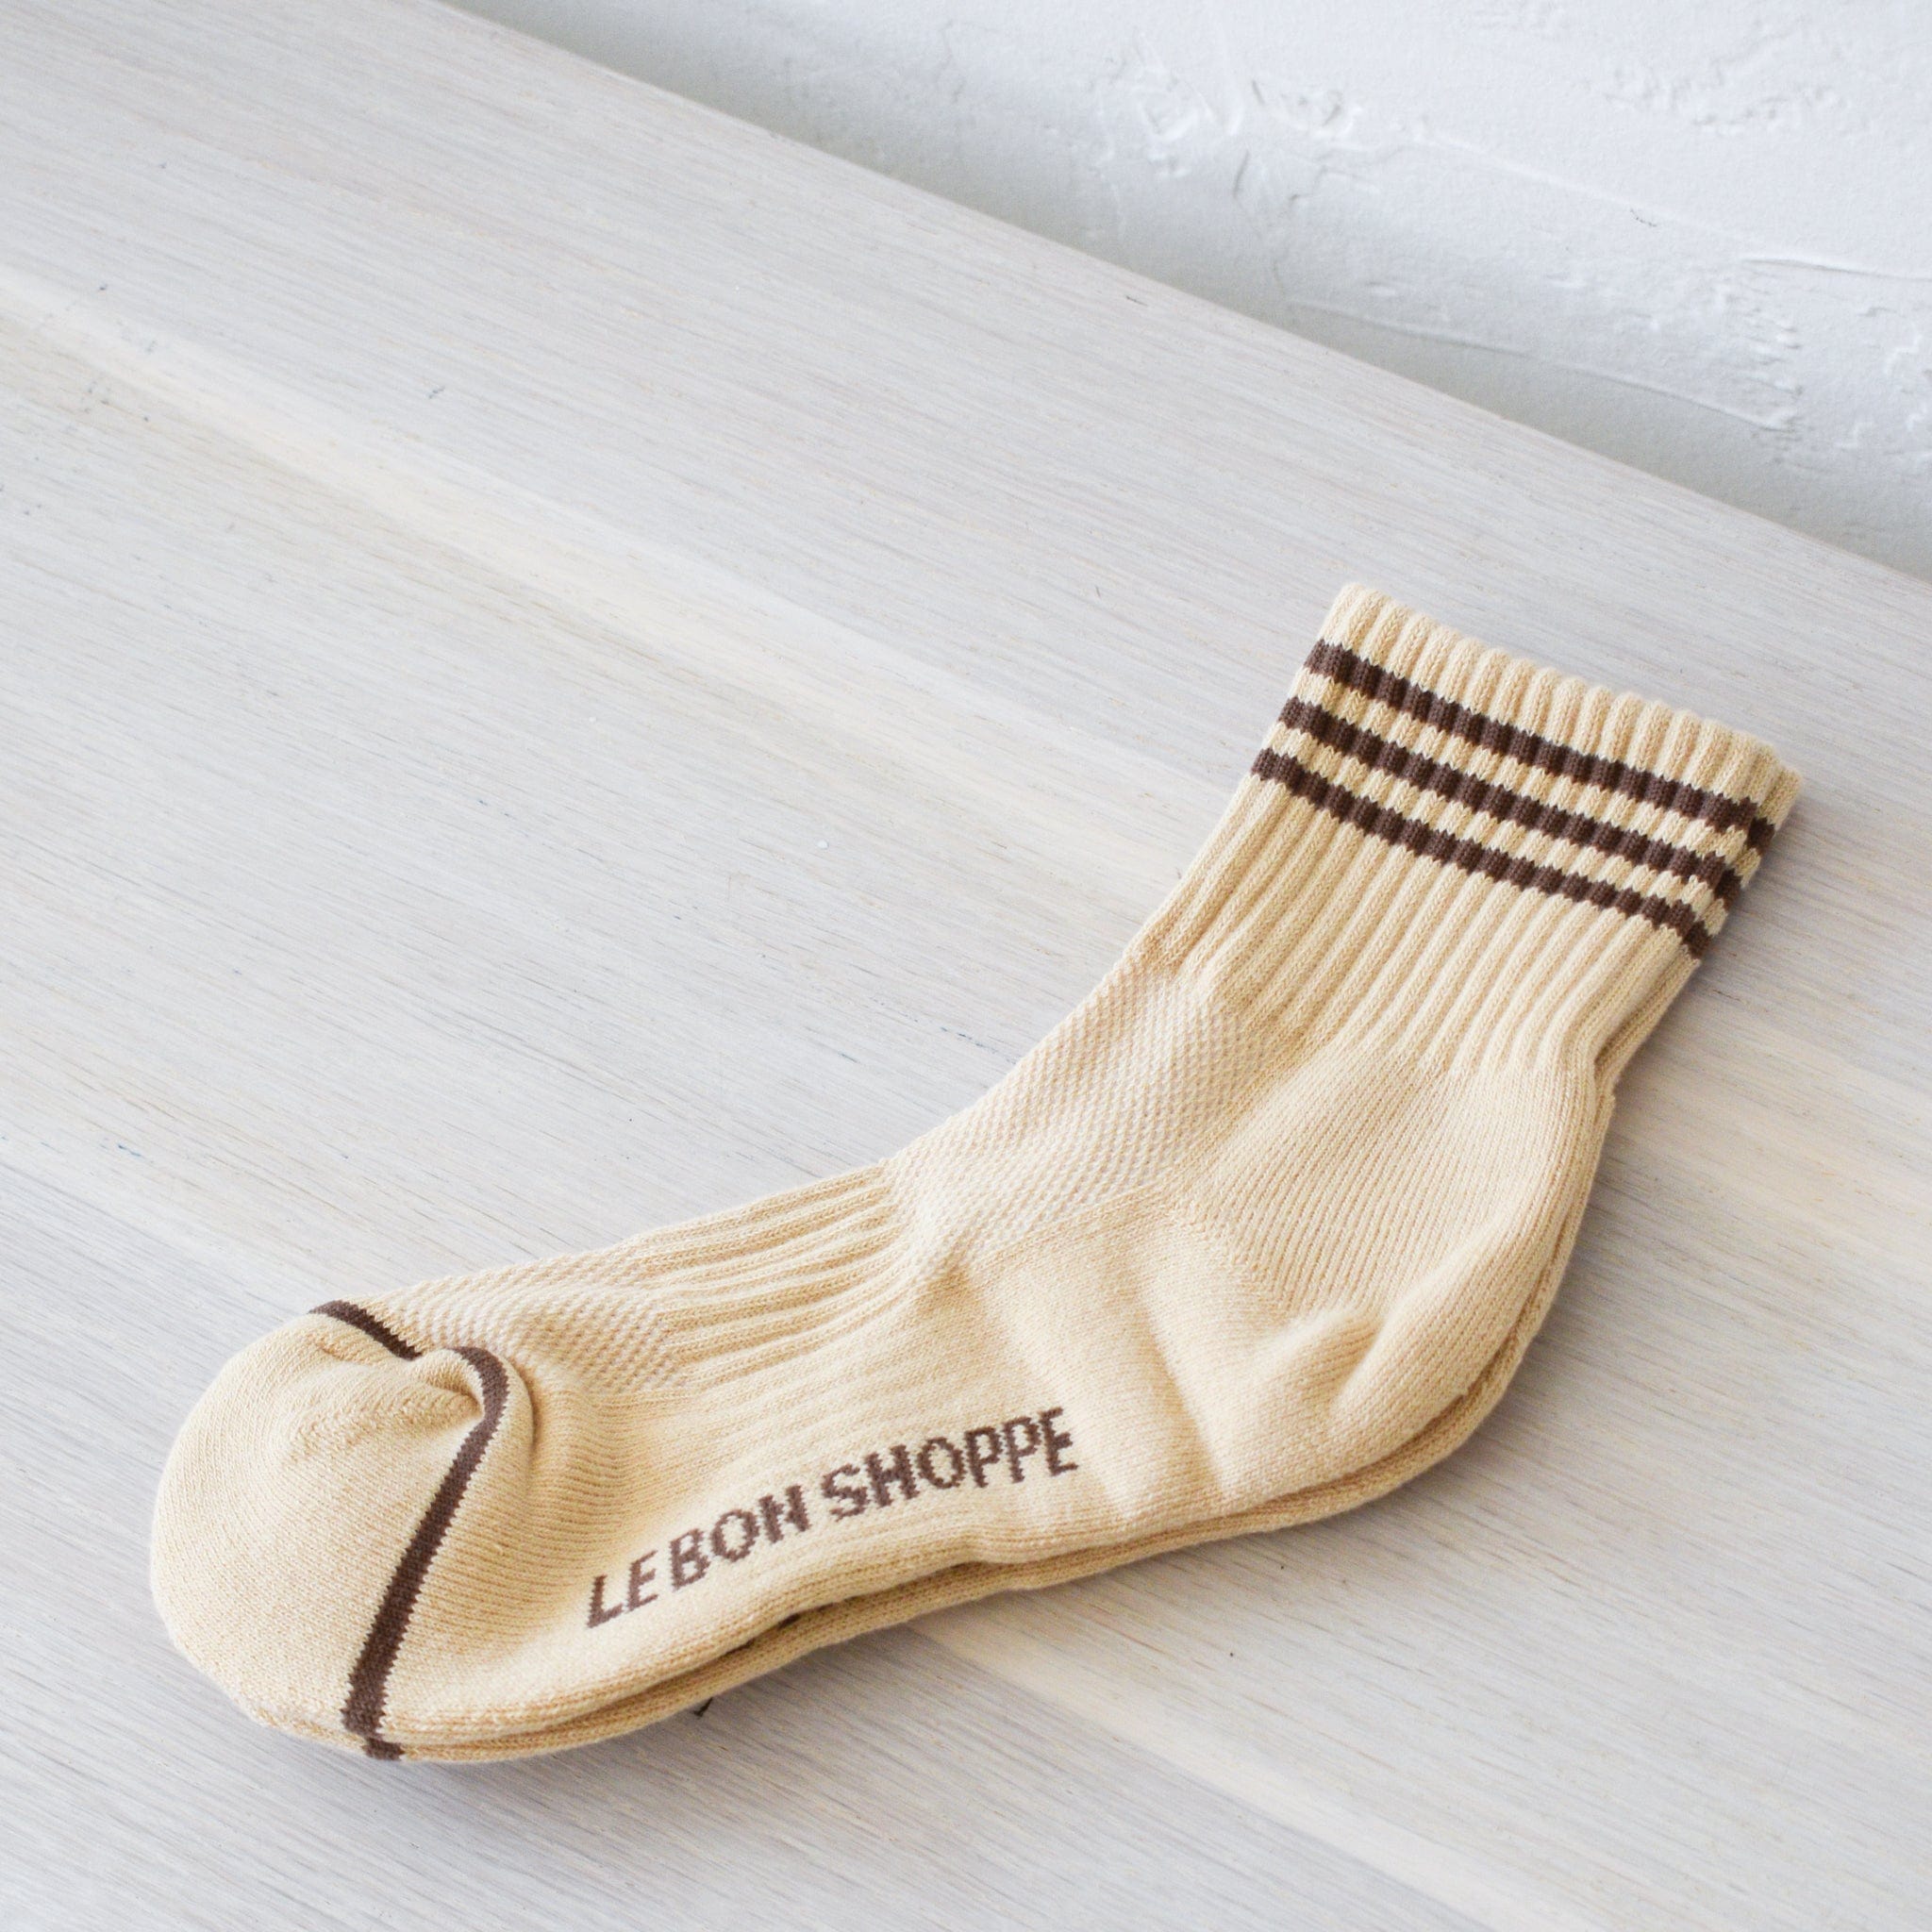 Le Bon Shoppe socks Daisy Le Bon "Girlfriend" Socks